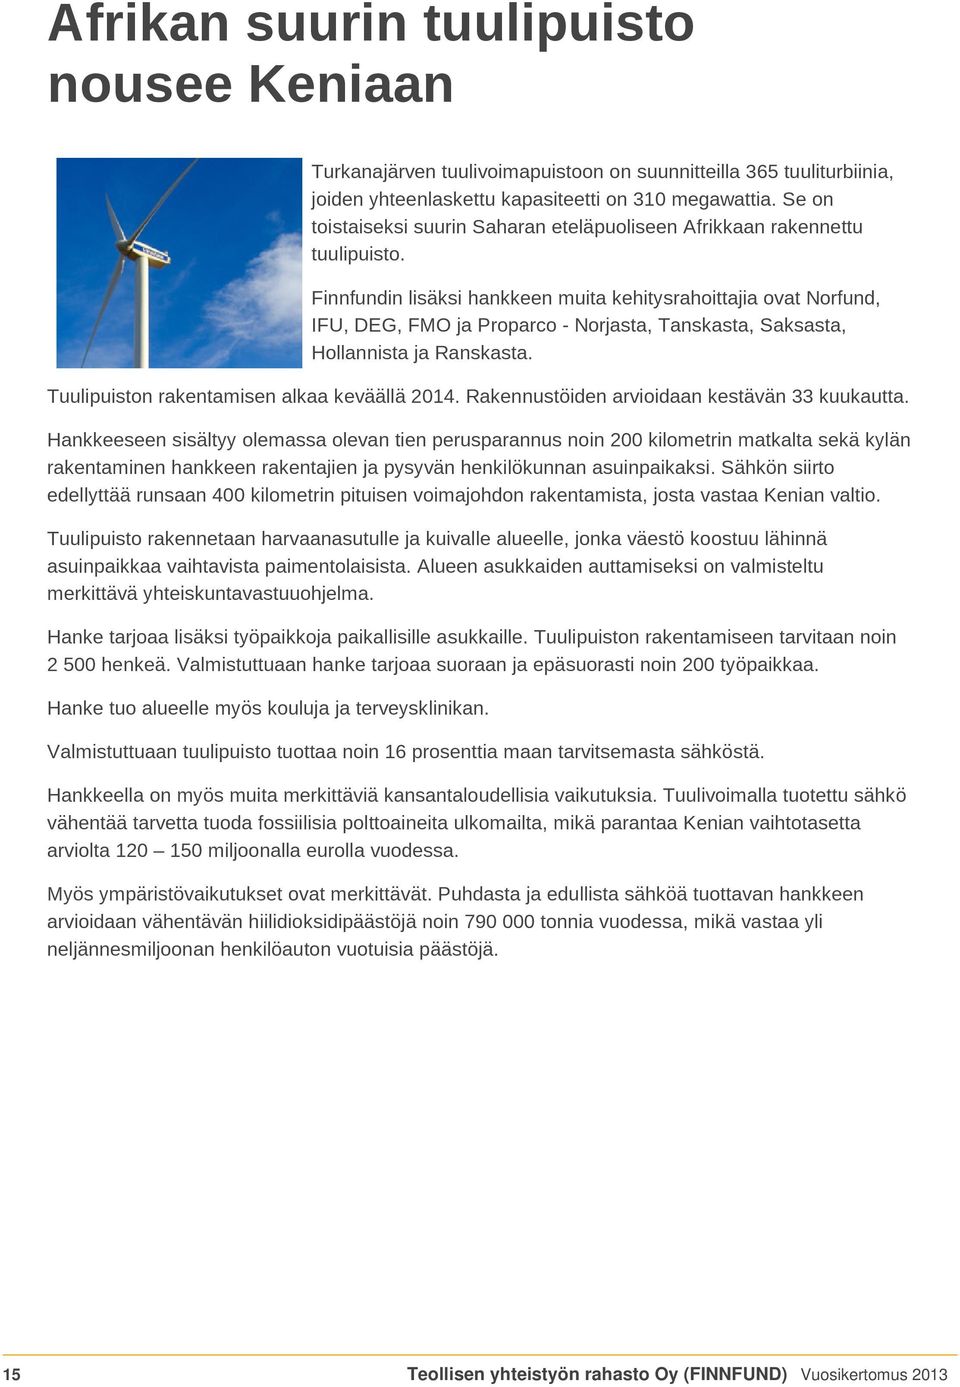 Finnfundin lisäksi hankkeen muita kehitysrahoittajia ovat Norfund, IFU, DEG, FMO ja Proparco - Norjasta, Tanskasta, Saksasta, Hollannista ja Ranskasta. Tuulipuiston rakentamisen alkaa keväällä 2014.